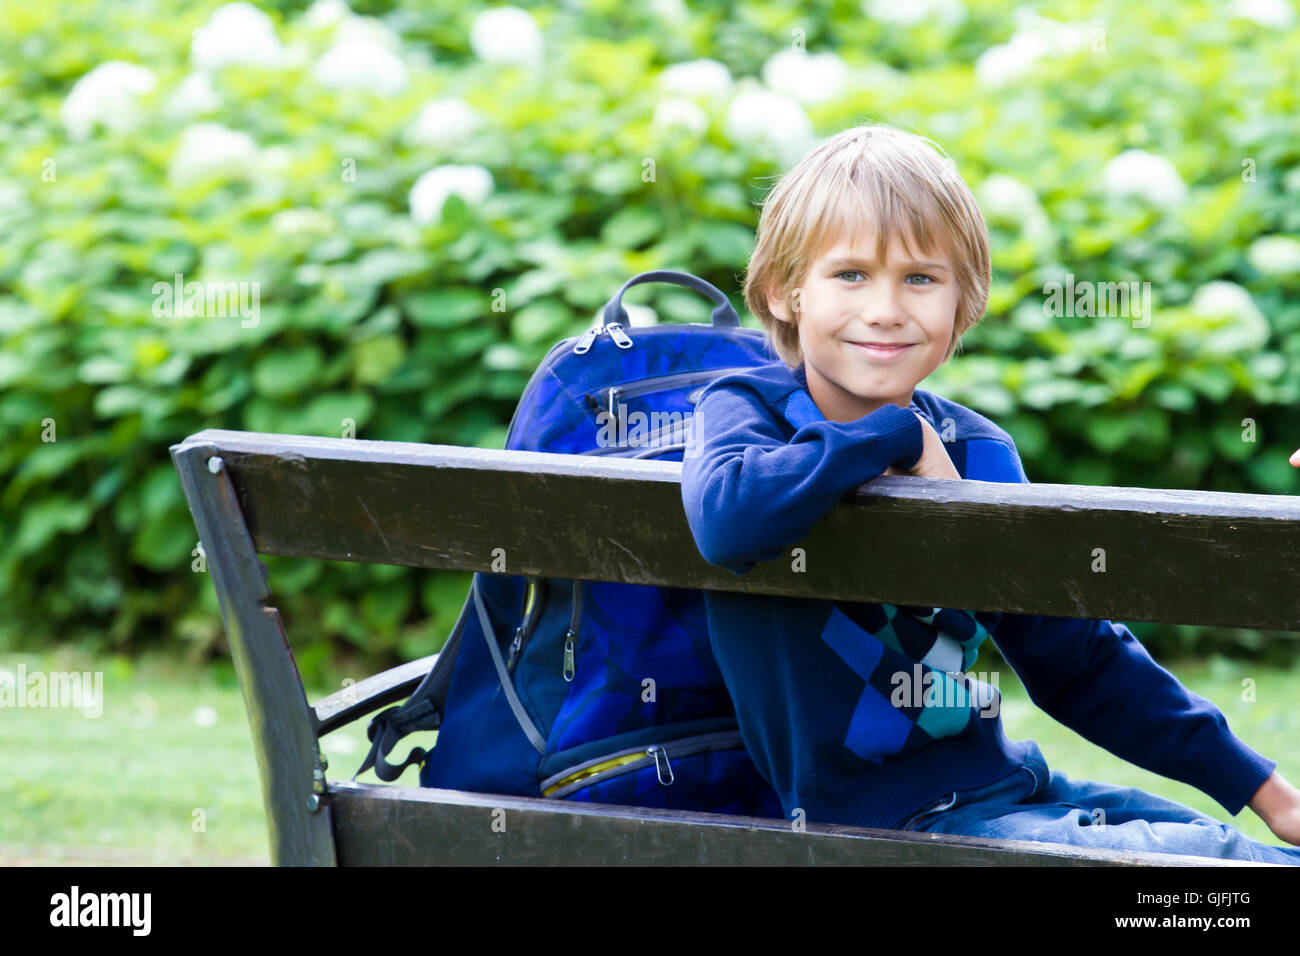 Smiling petit garçon assis sur un banc en bois avec son sac à dos. L'éducation, l'école, de vie, de personnes concept Banque D'Images